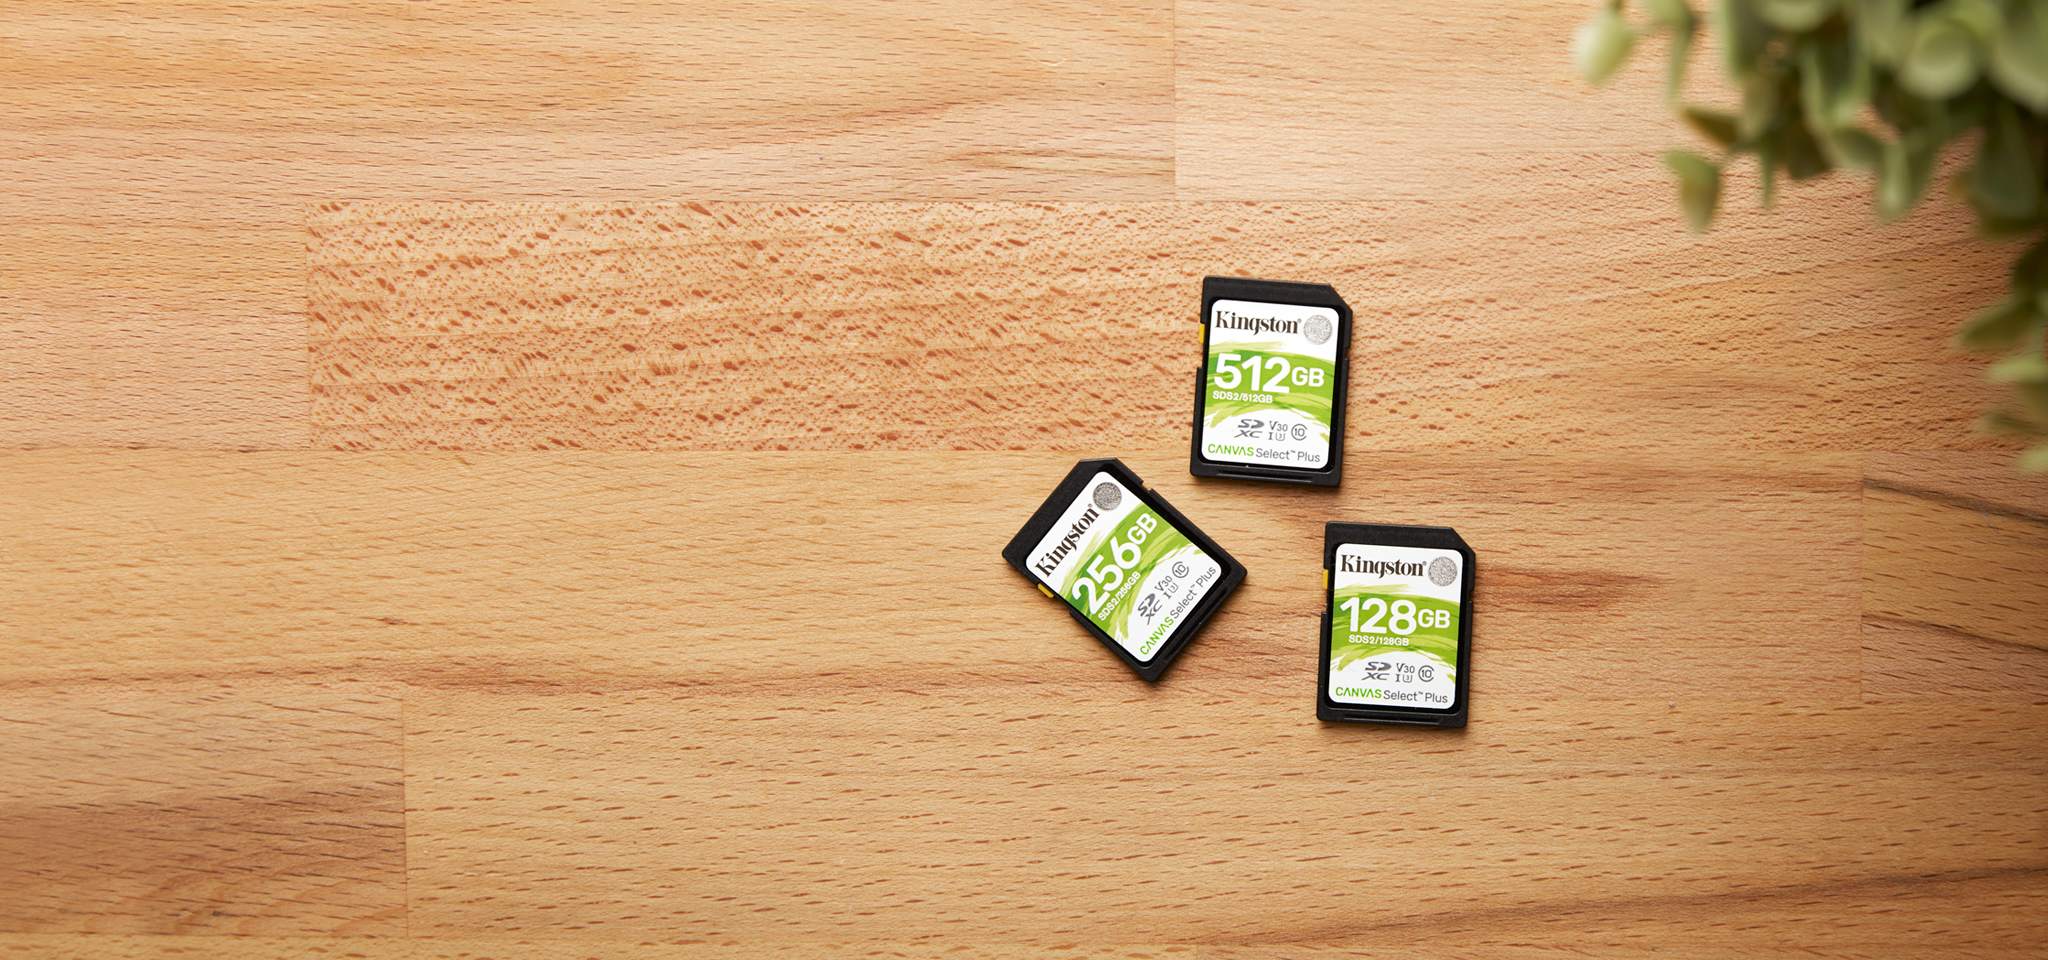 三张容量不同的 Canvas Select Plus SD 存储卡位于一张木纹桌上